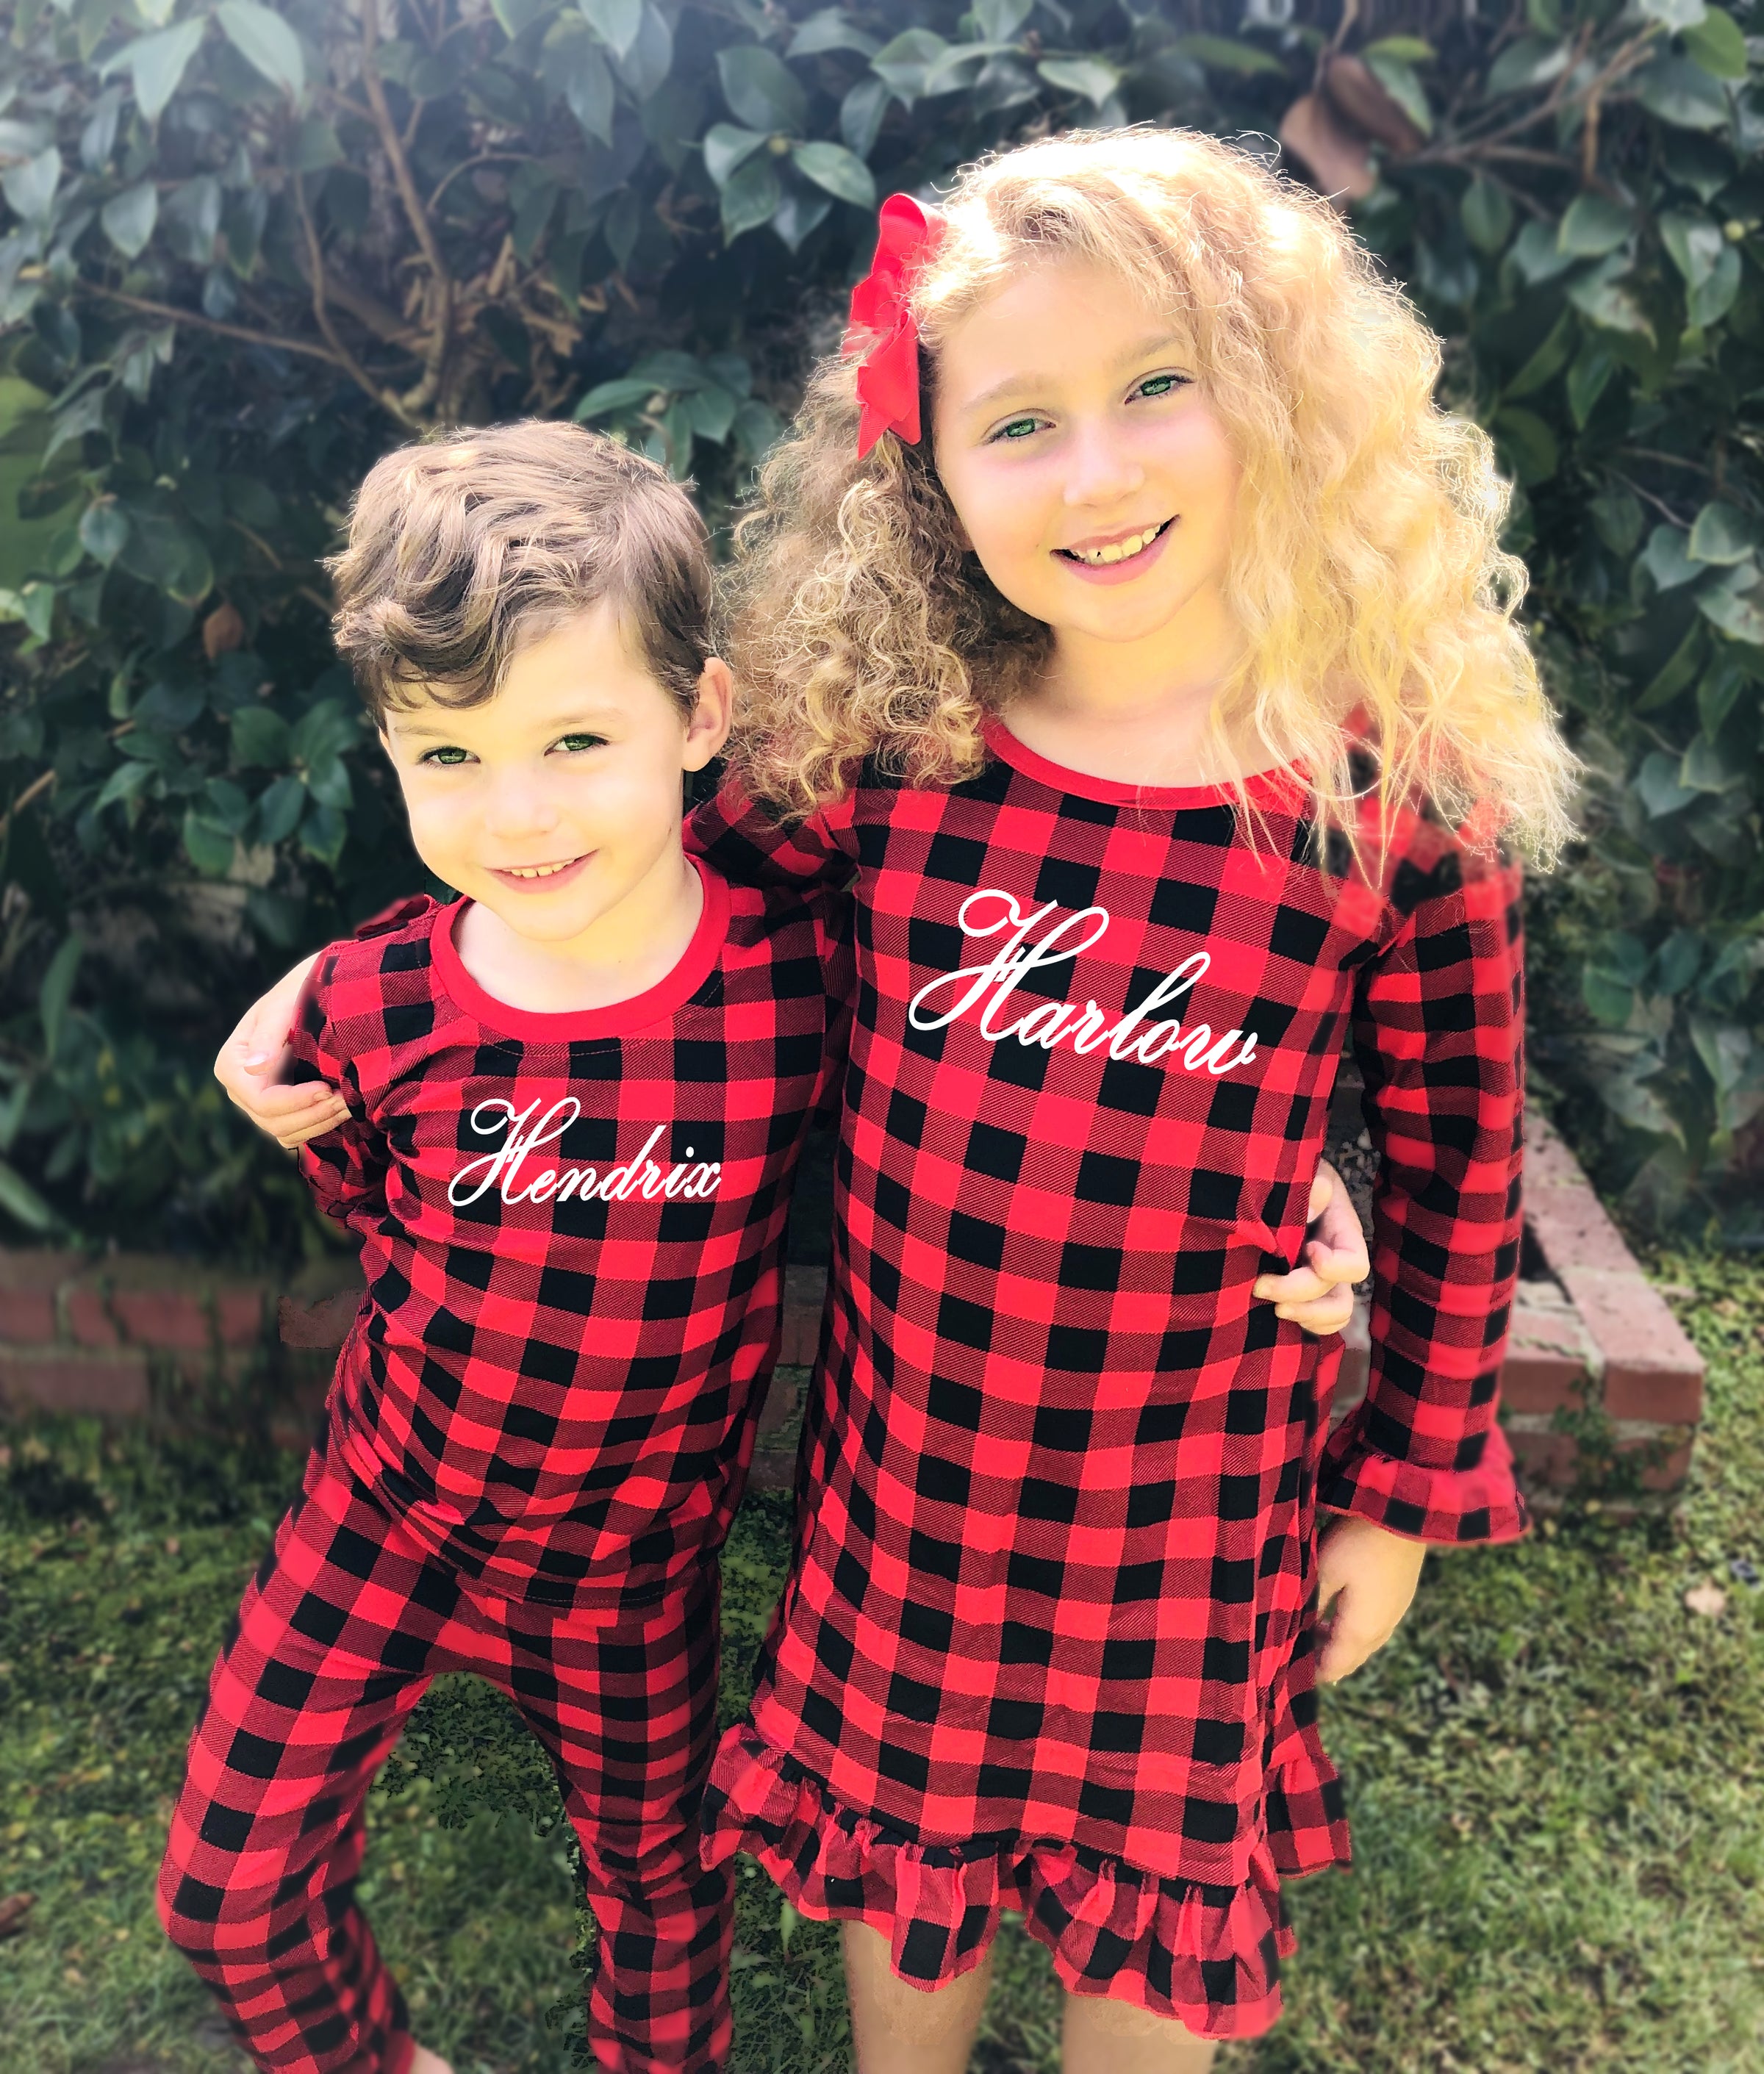 Personalized Buffalo Plaid Christmas Pajamas – Cotton Sisters